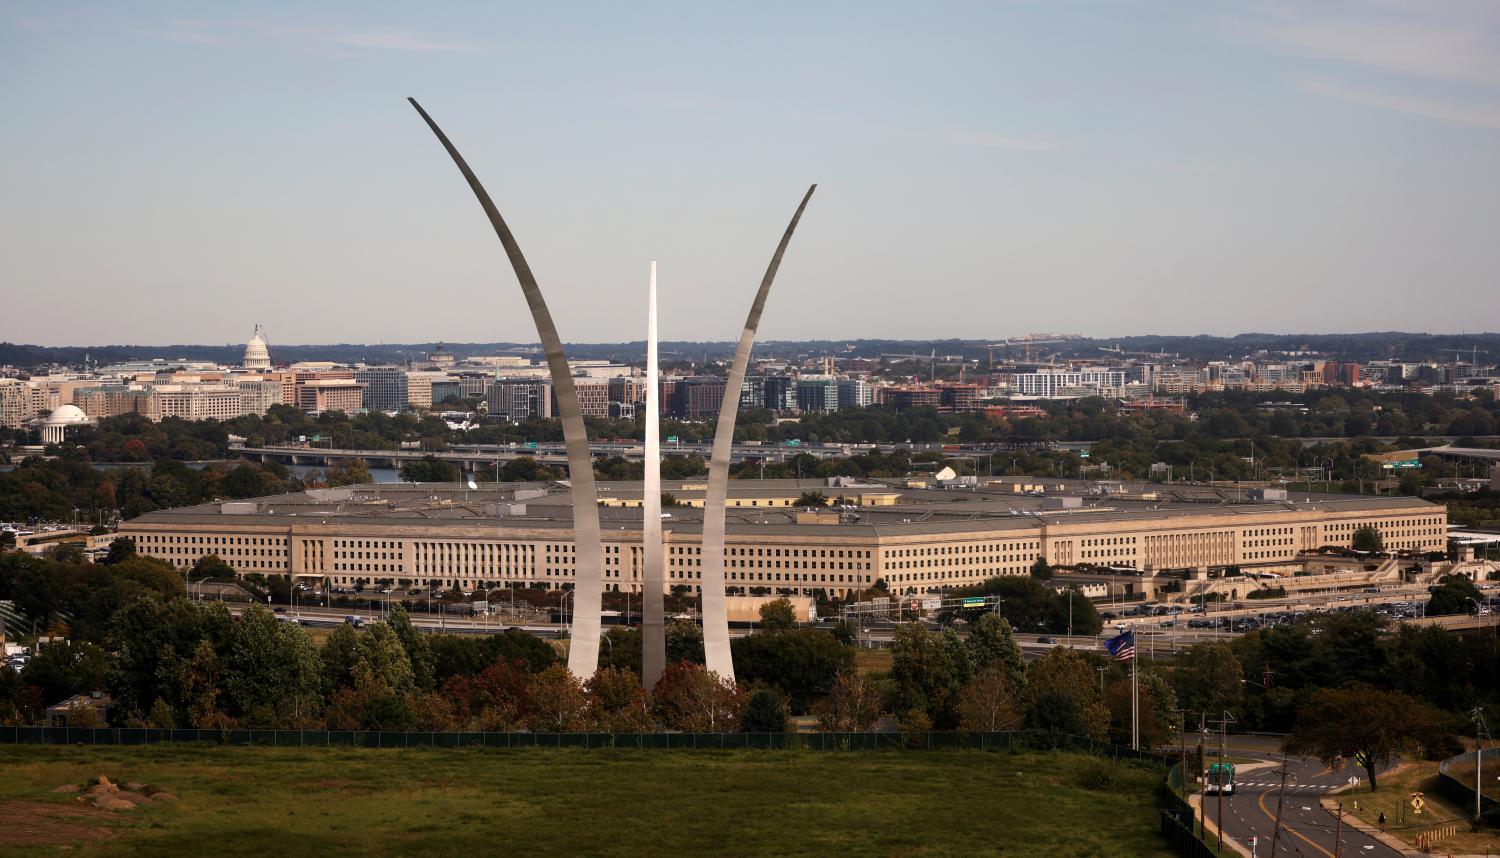 FILE PHOTO: The Pentagon building is seen in Arlington, Virginia, U.S. October 9, 2020. REUTERS/Carlos Barria